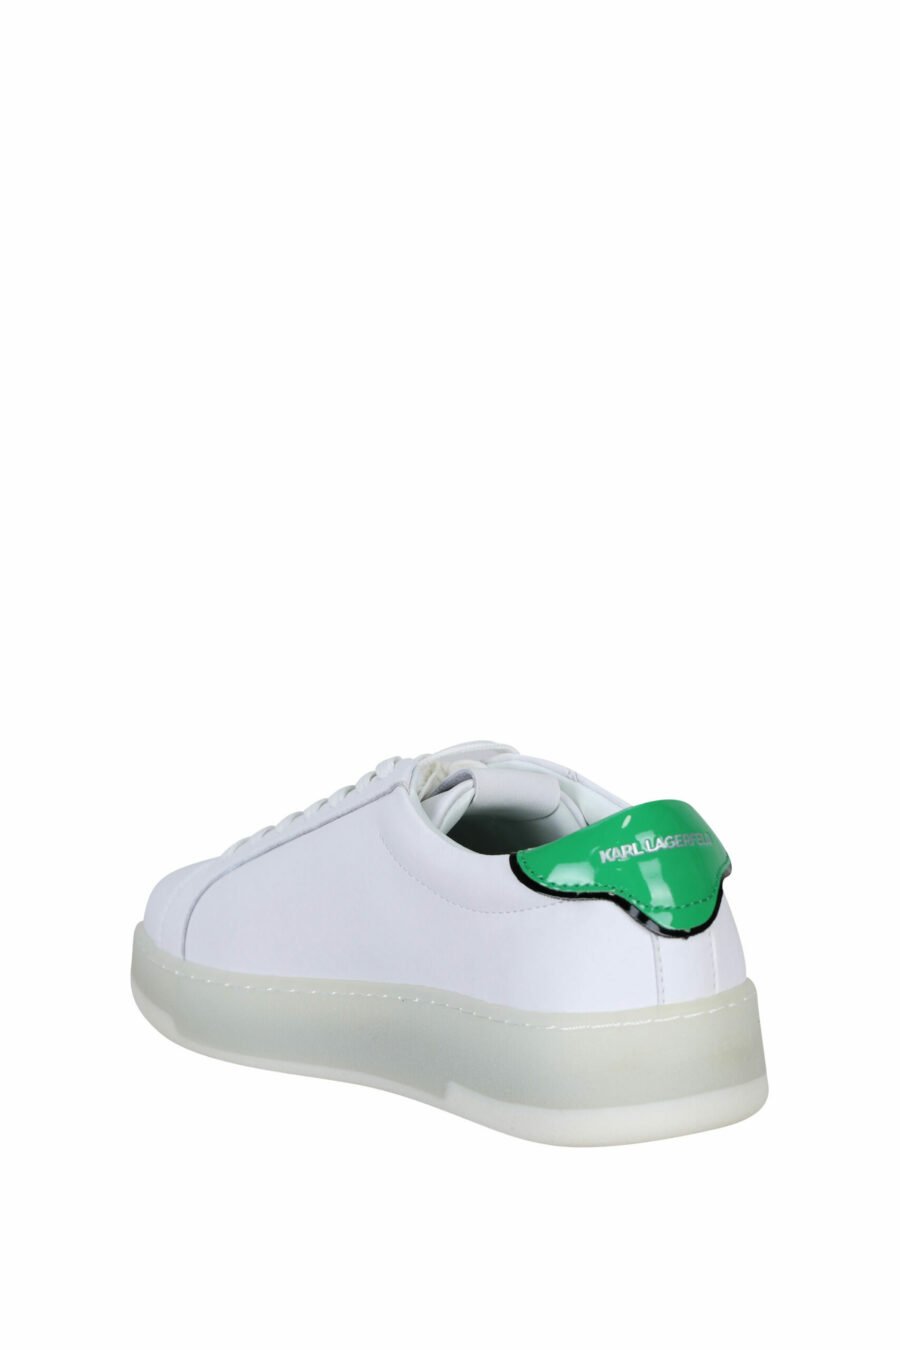 Zapatillas blancas con detalle verde y logo "st rue guillaume" - 5059529291289 3 scaled